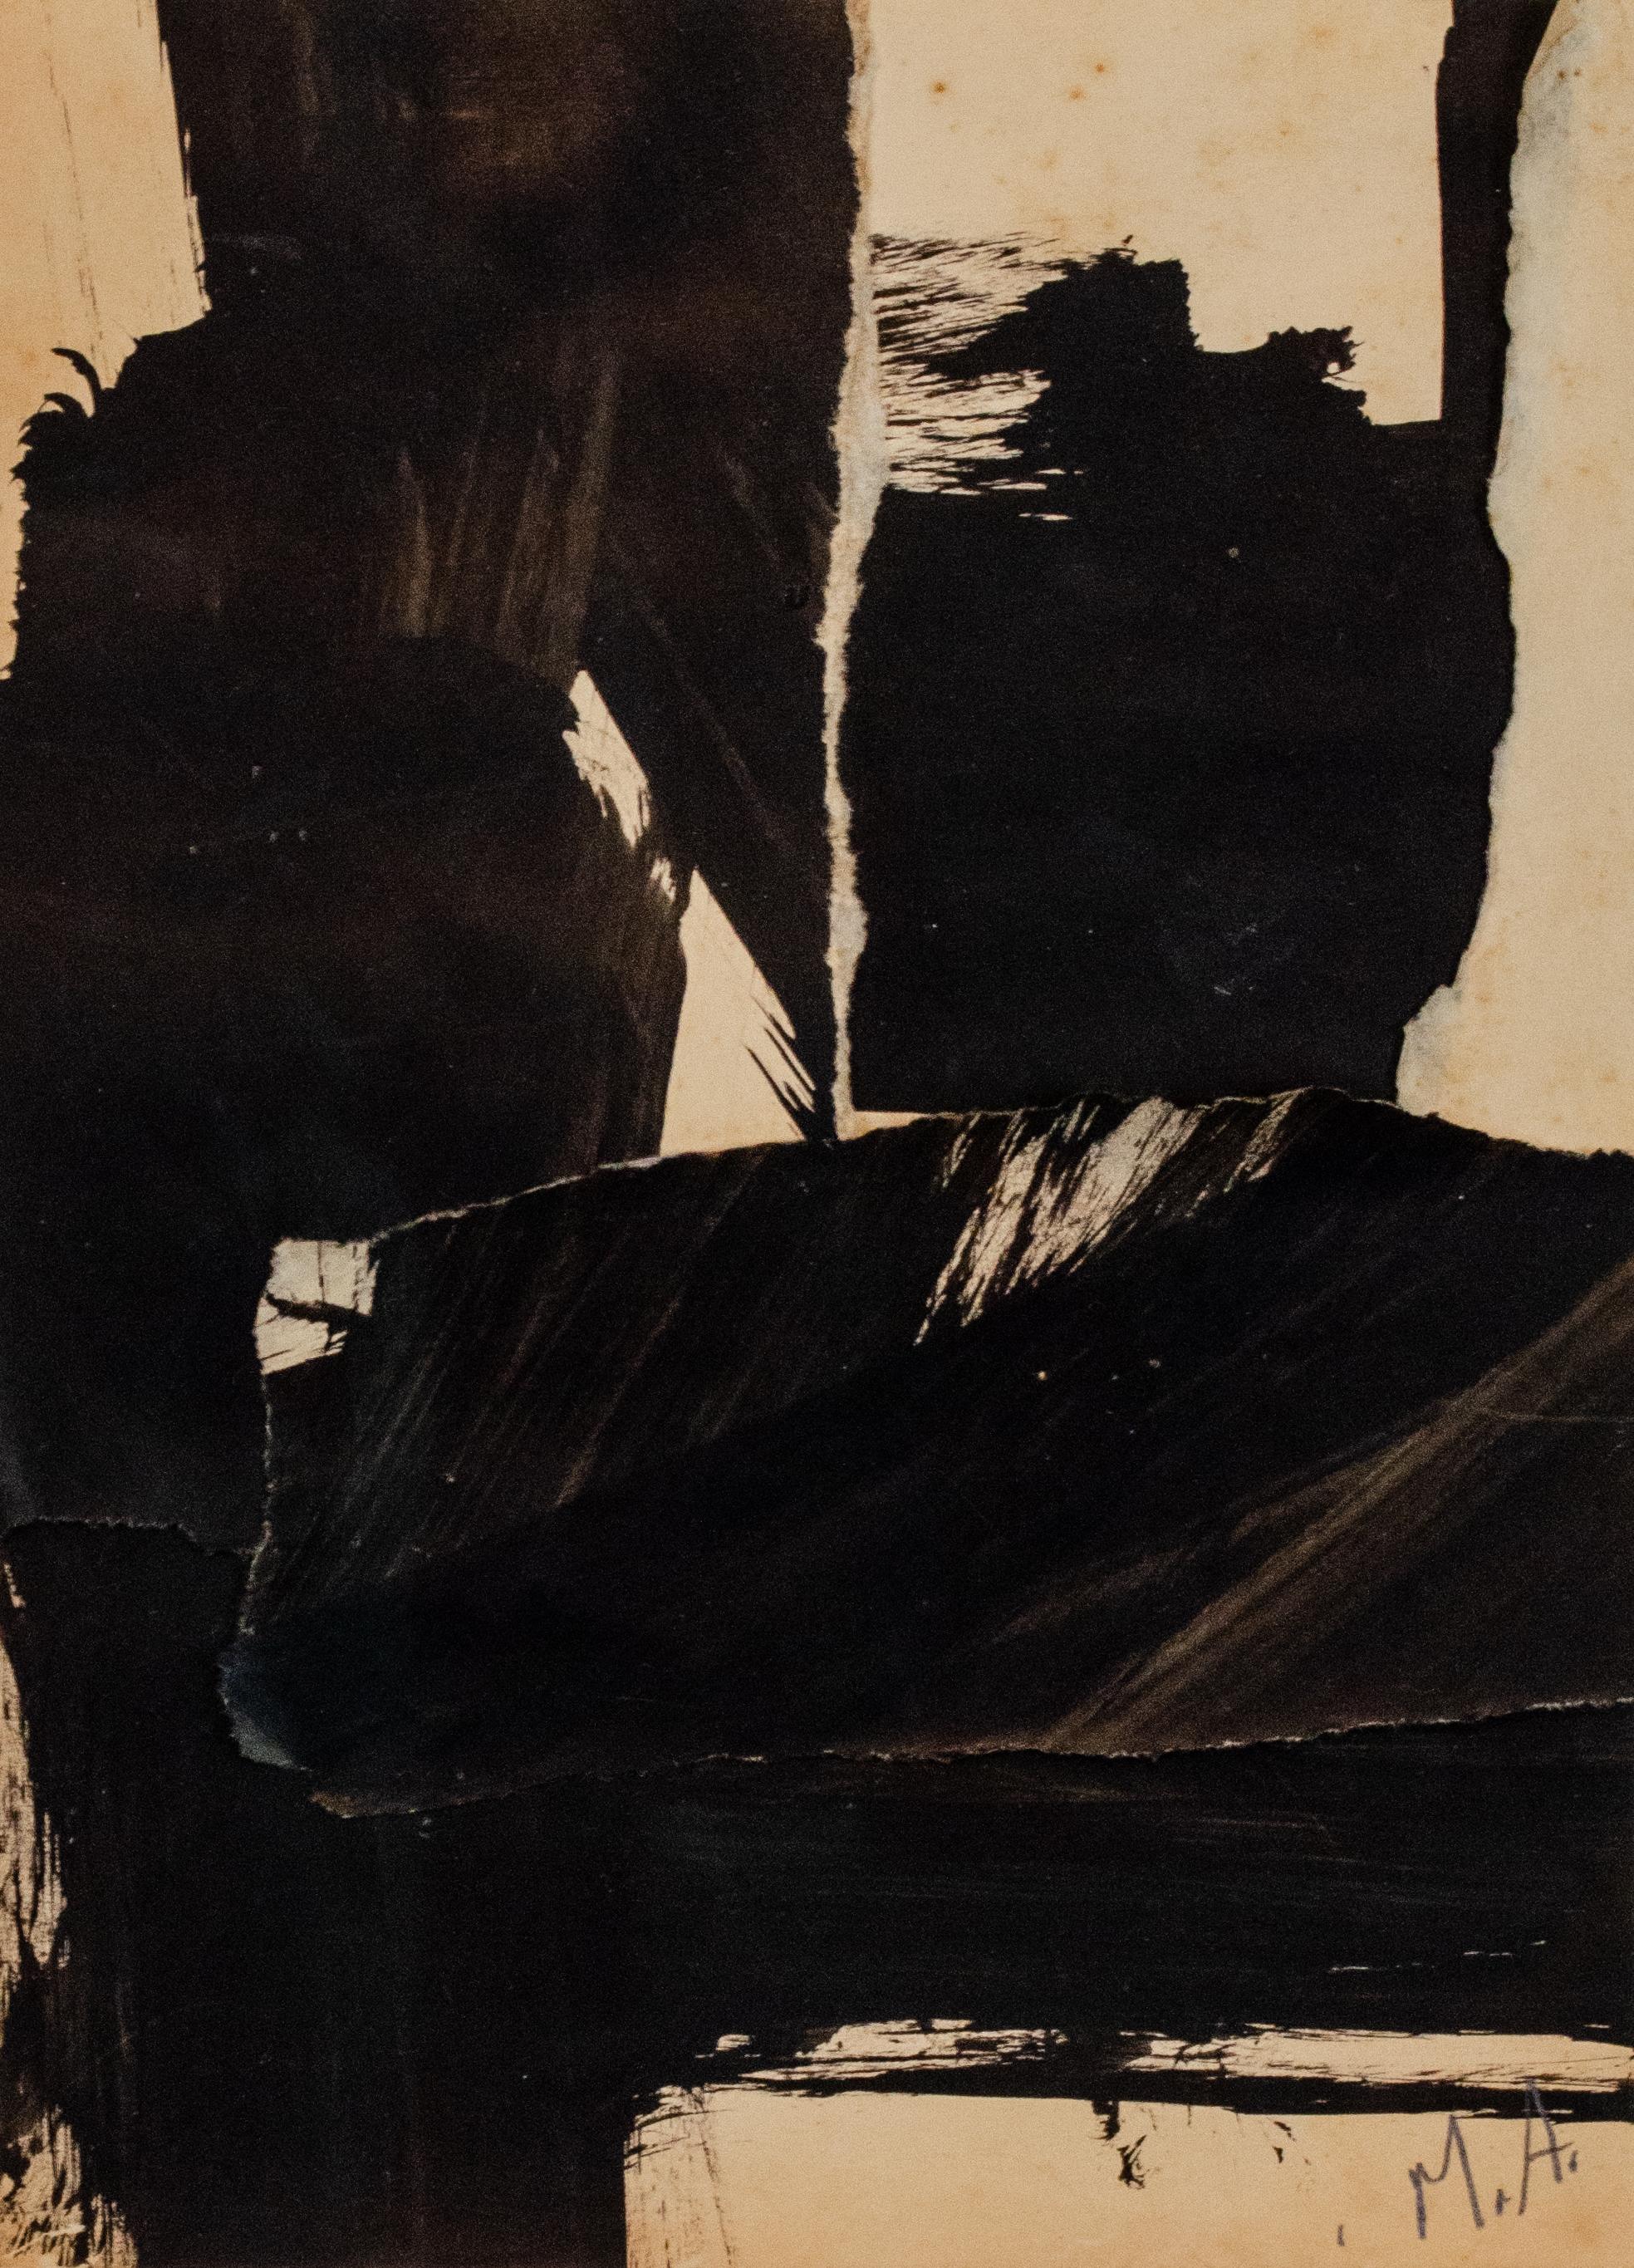 Mary Abbott
Ohne Titel, ca. 1953
Signiert mit Initialen unten rechts
Collage aus Öl und zerrissenem Papier
17 x 14 1/2 Zoll

Provenienz:
Thomas McCormick Gallery, Chicago
Private Collection, New York (direkt von den oben genannten Personen